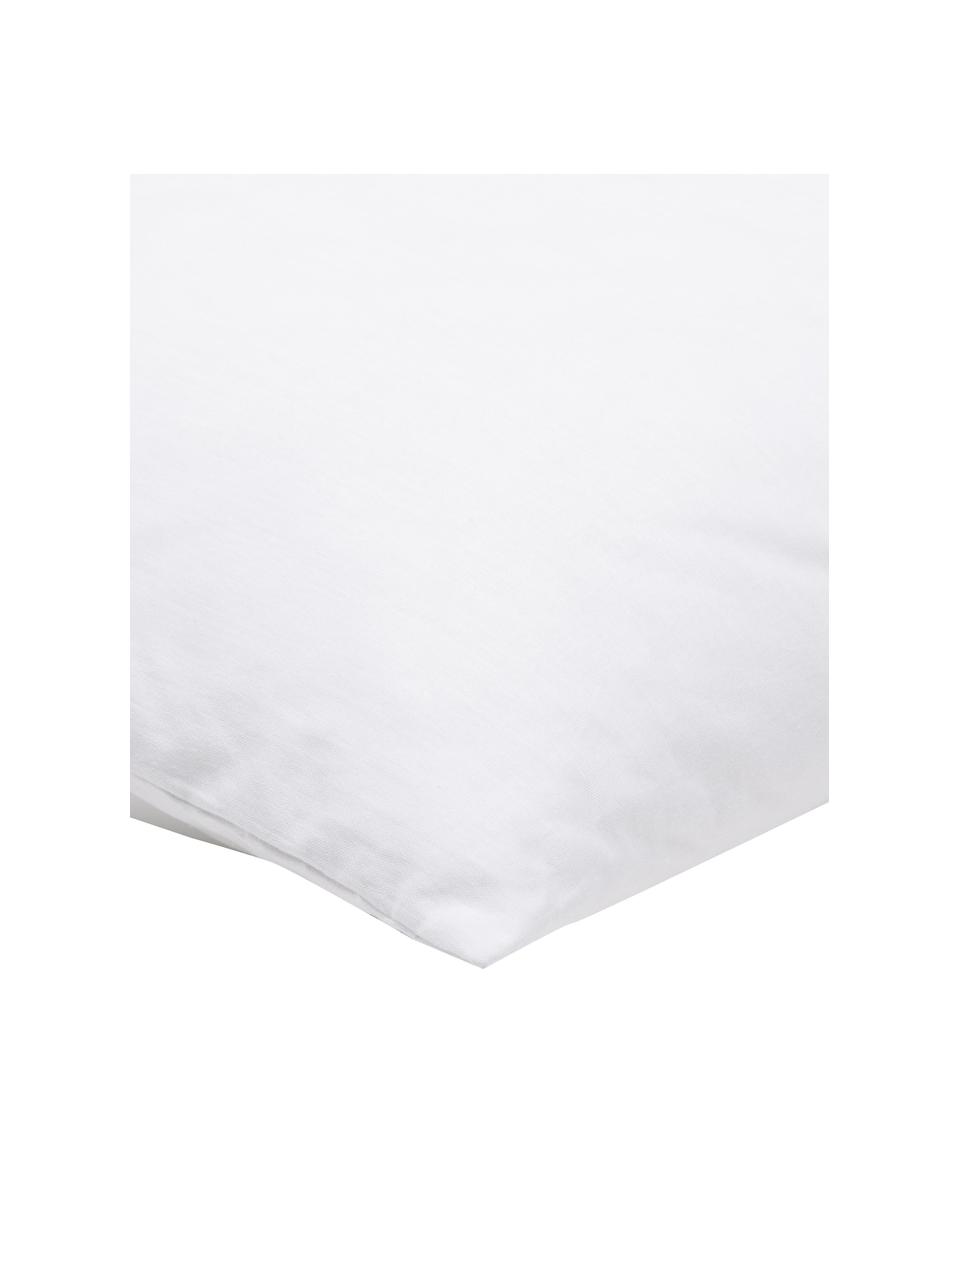 Wkład do poduszki z mikrofibry Sia, 50x50, Biały, S 50 x D 50 cm